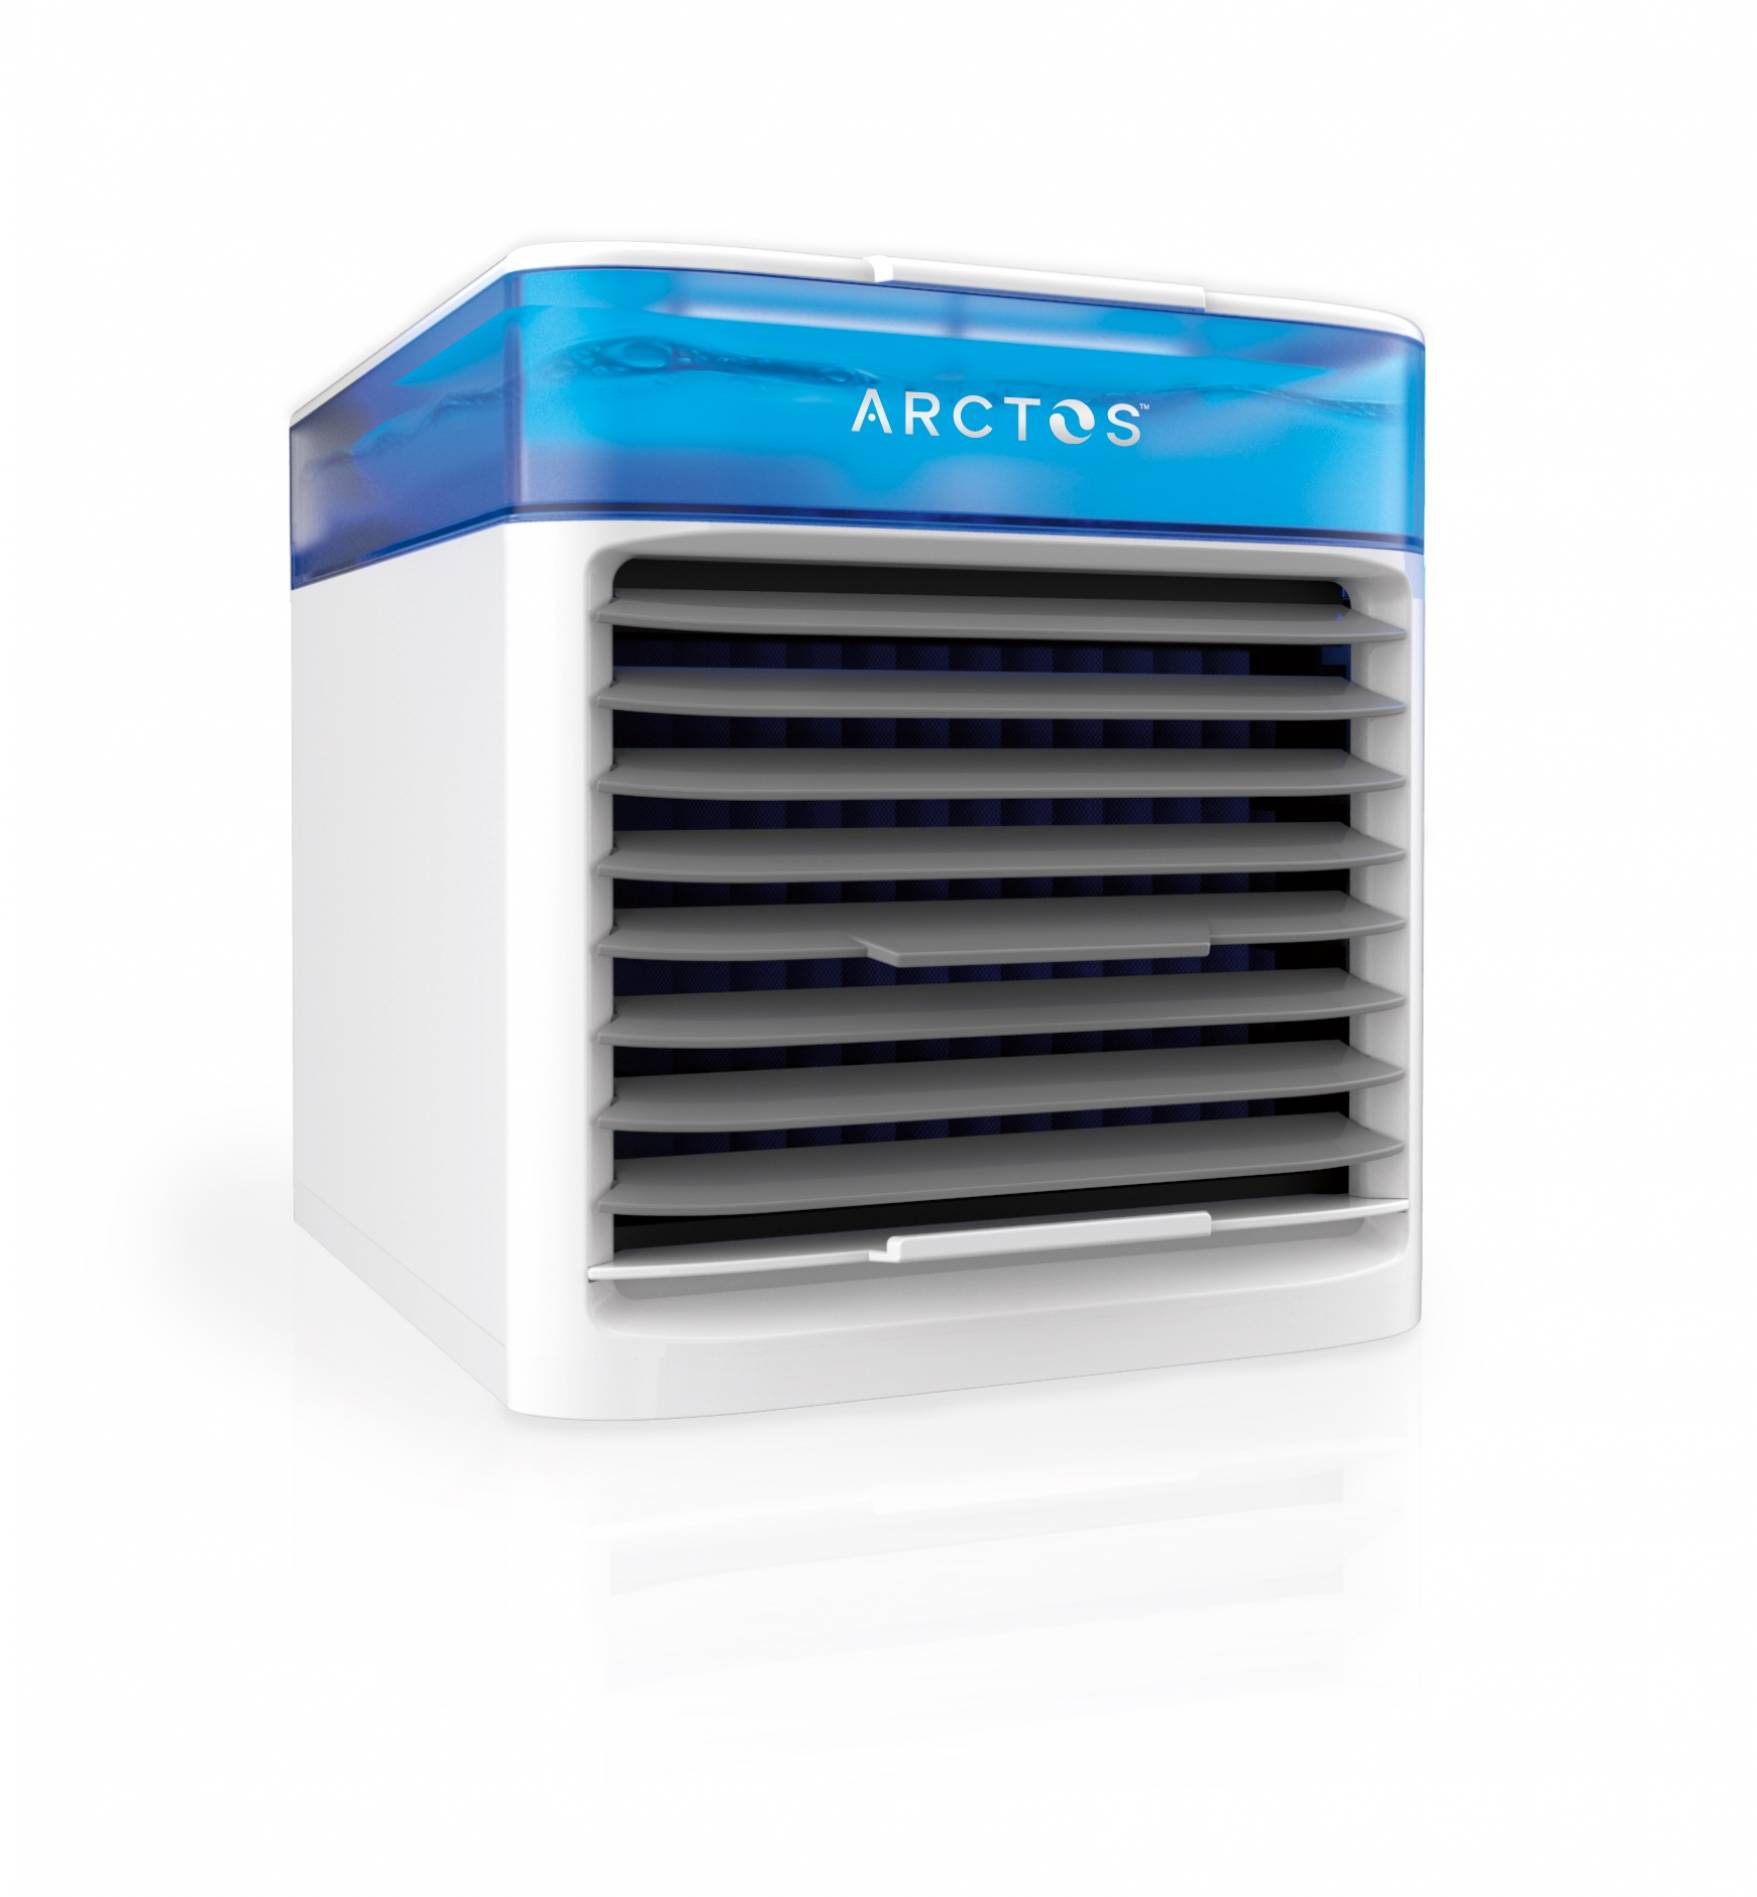 Arctos Conditioner Reviews